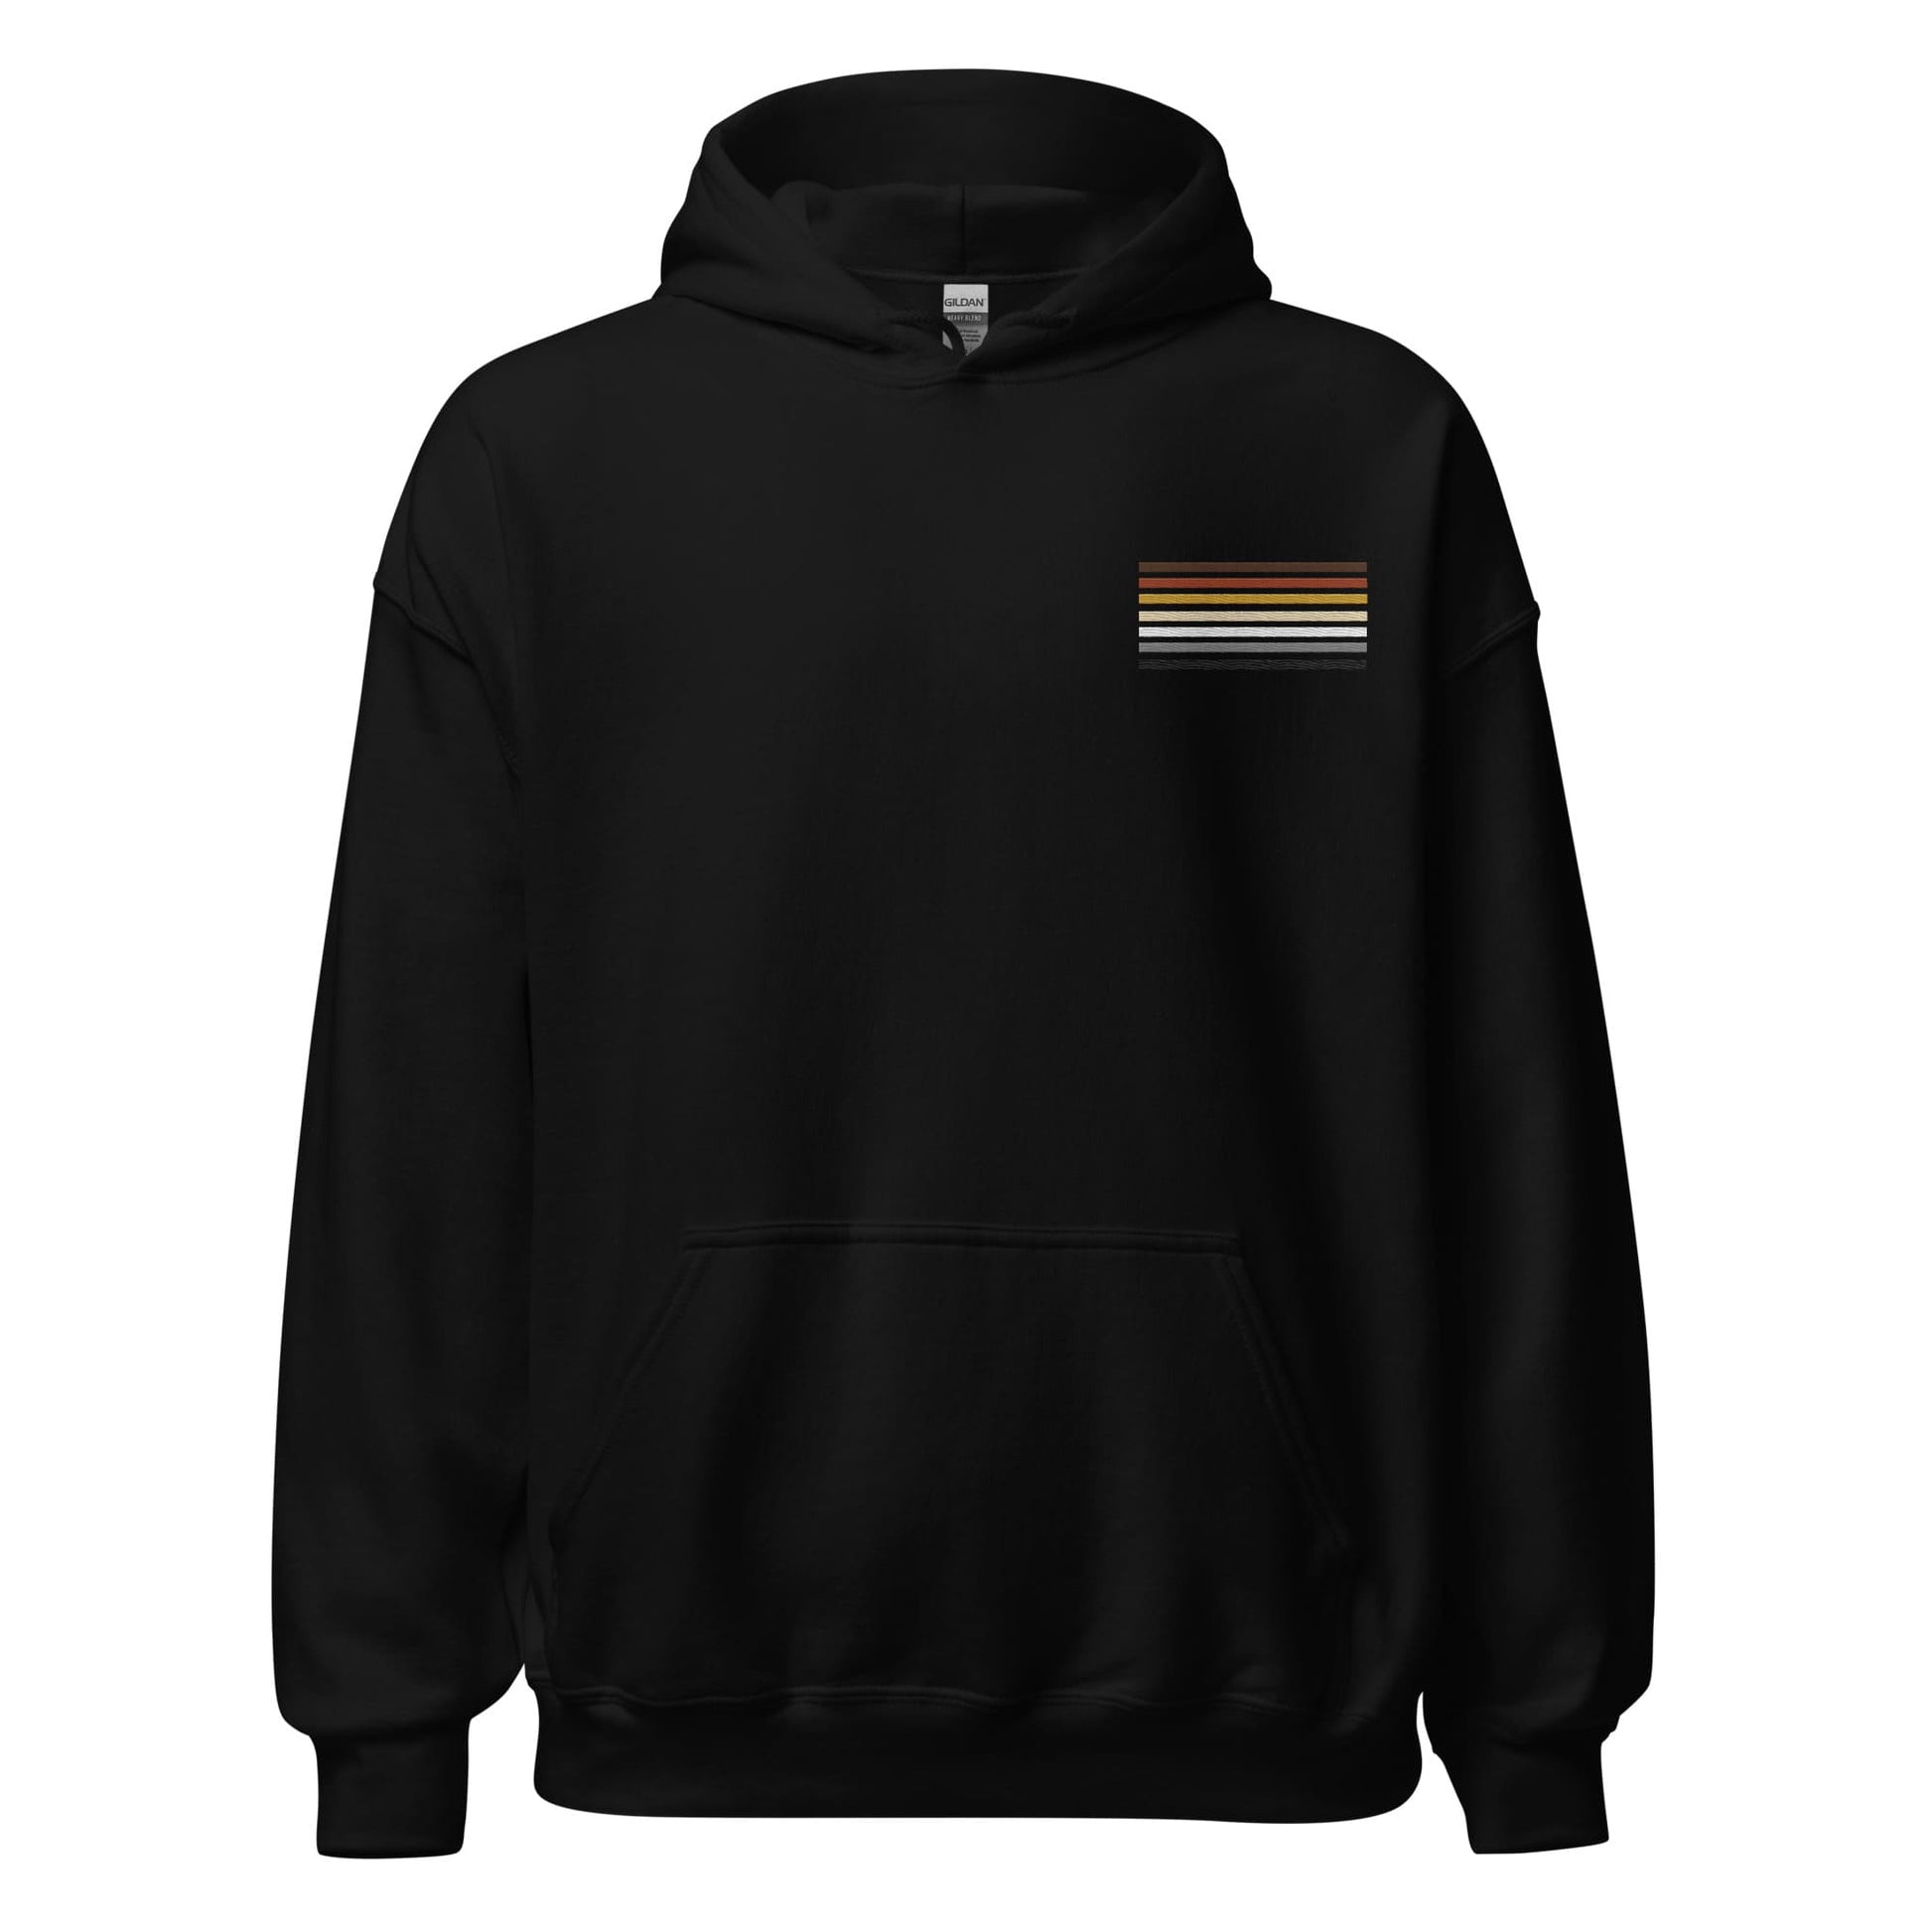 bear pride hoodie, subtle gay bear embroidered pocket design hooded sweatshirt, hang